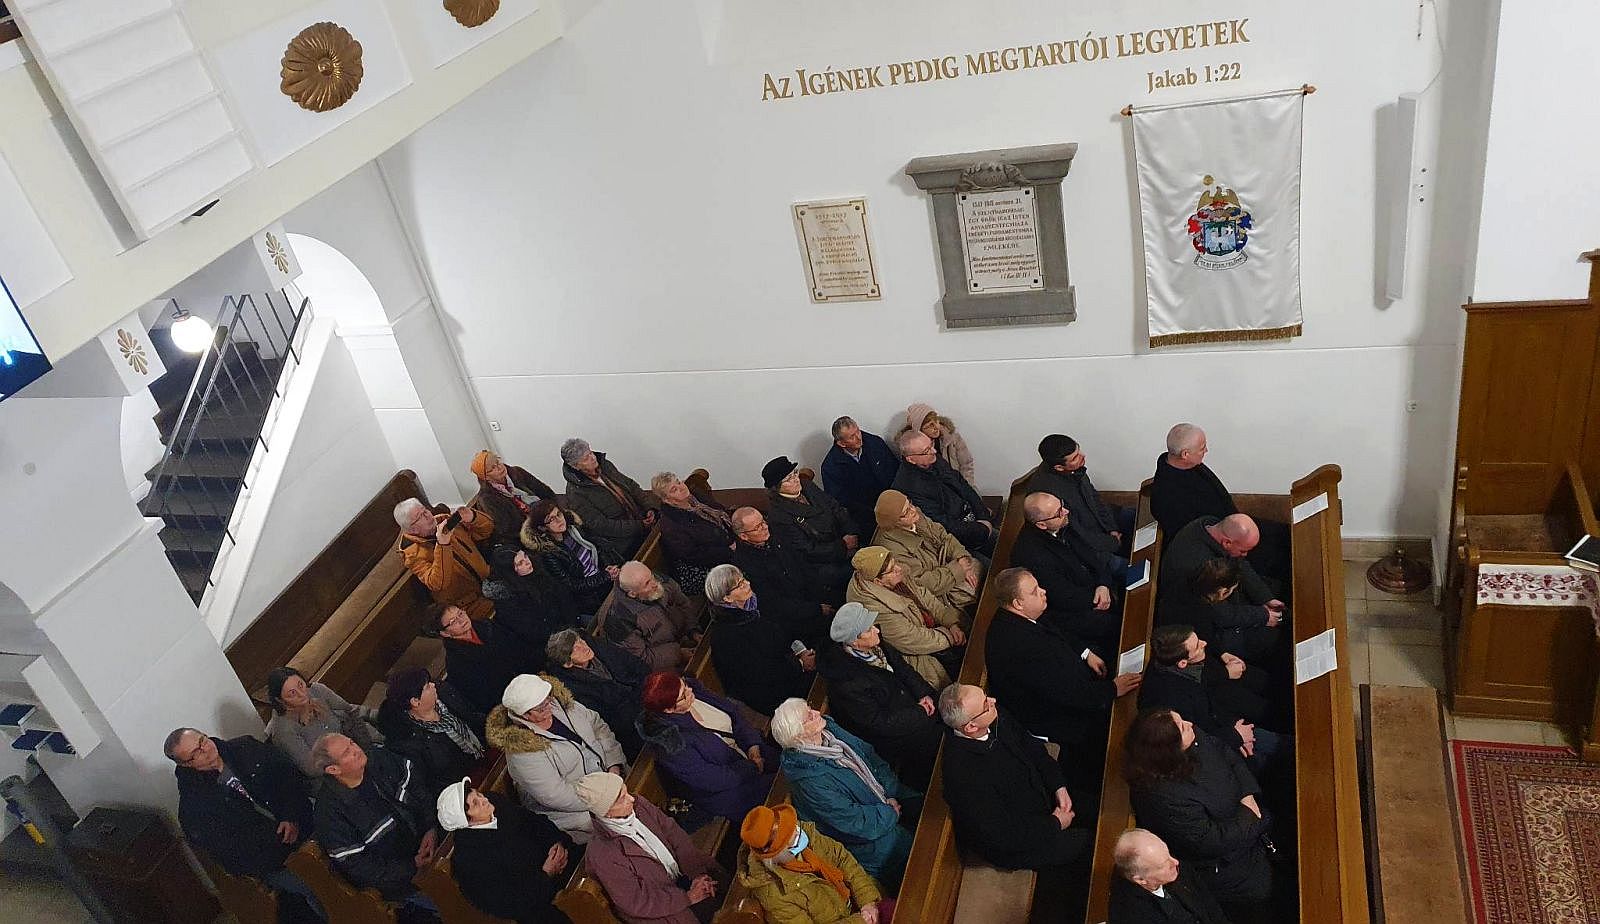 Ünnepeljünk együtt! – 200 éves a székesfehérvári református gyülekezet